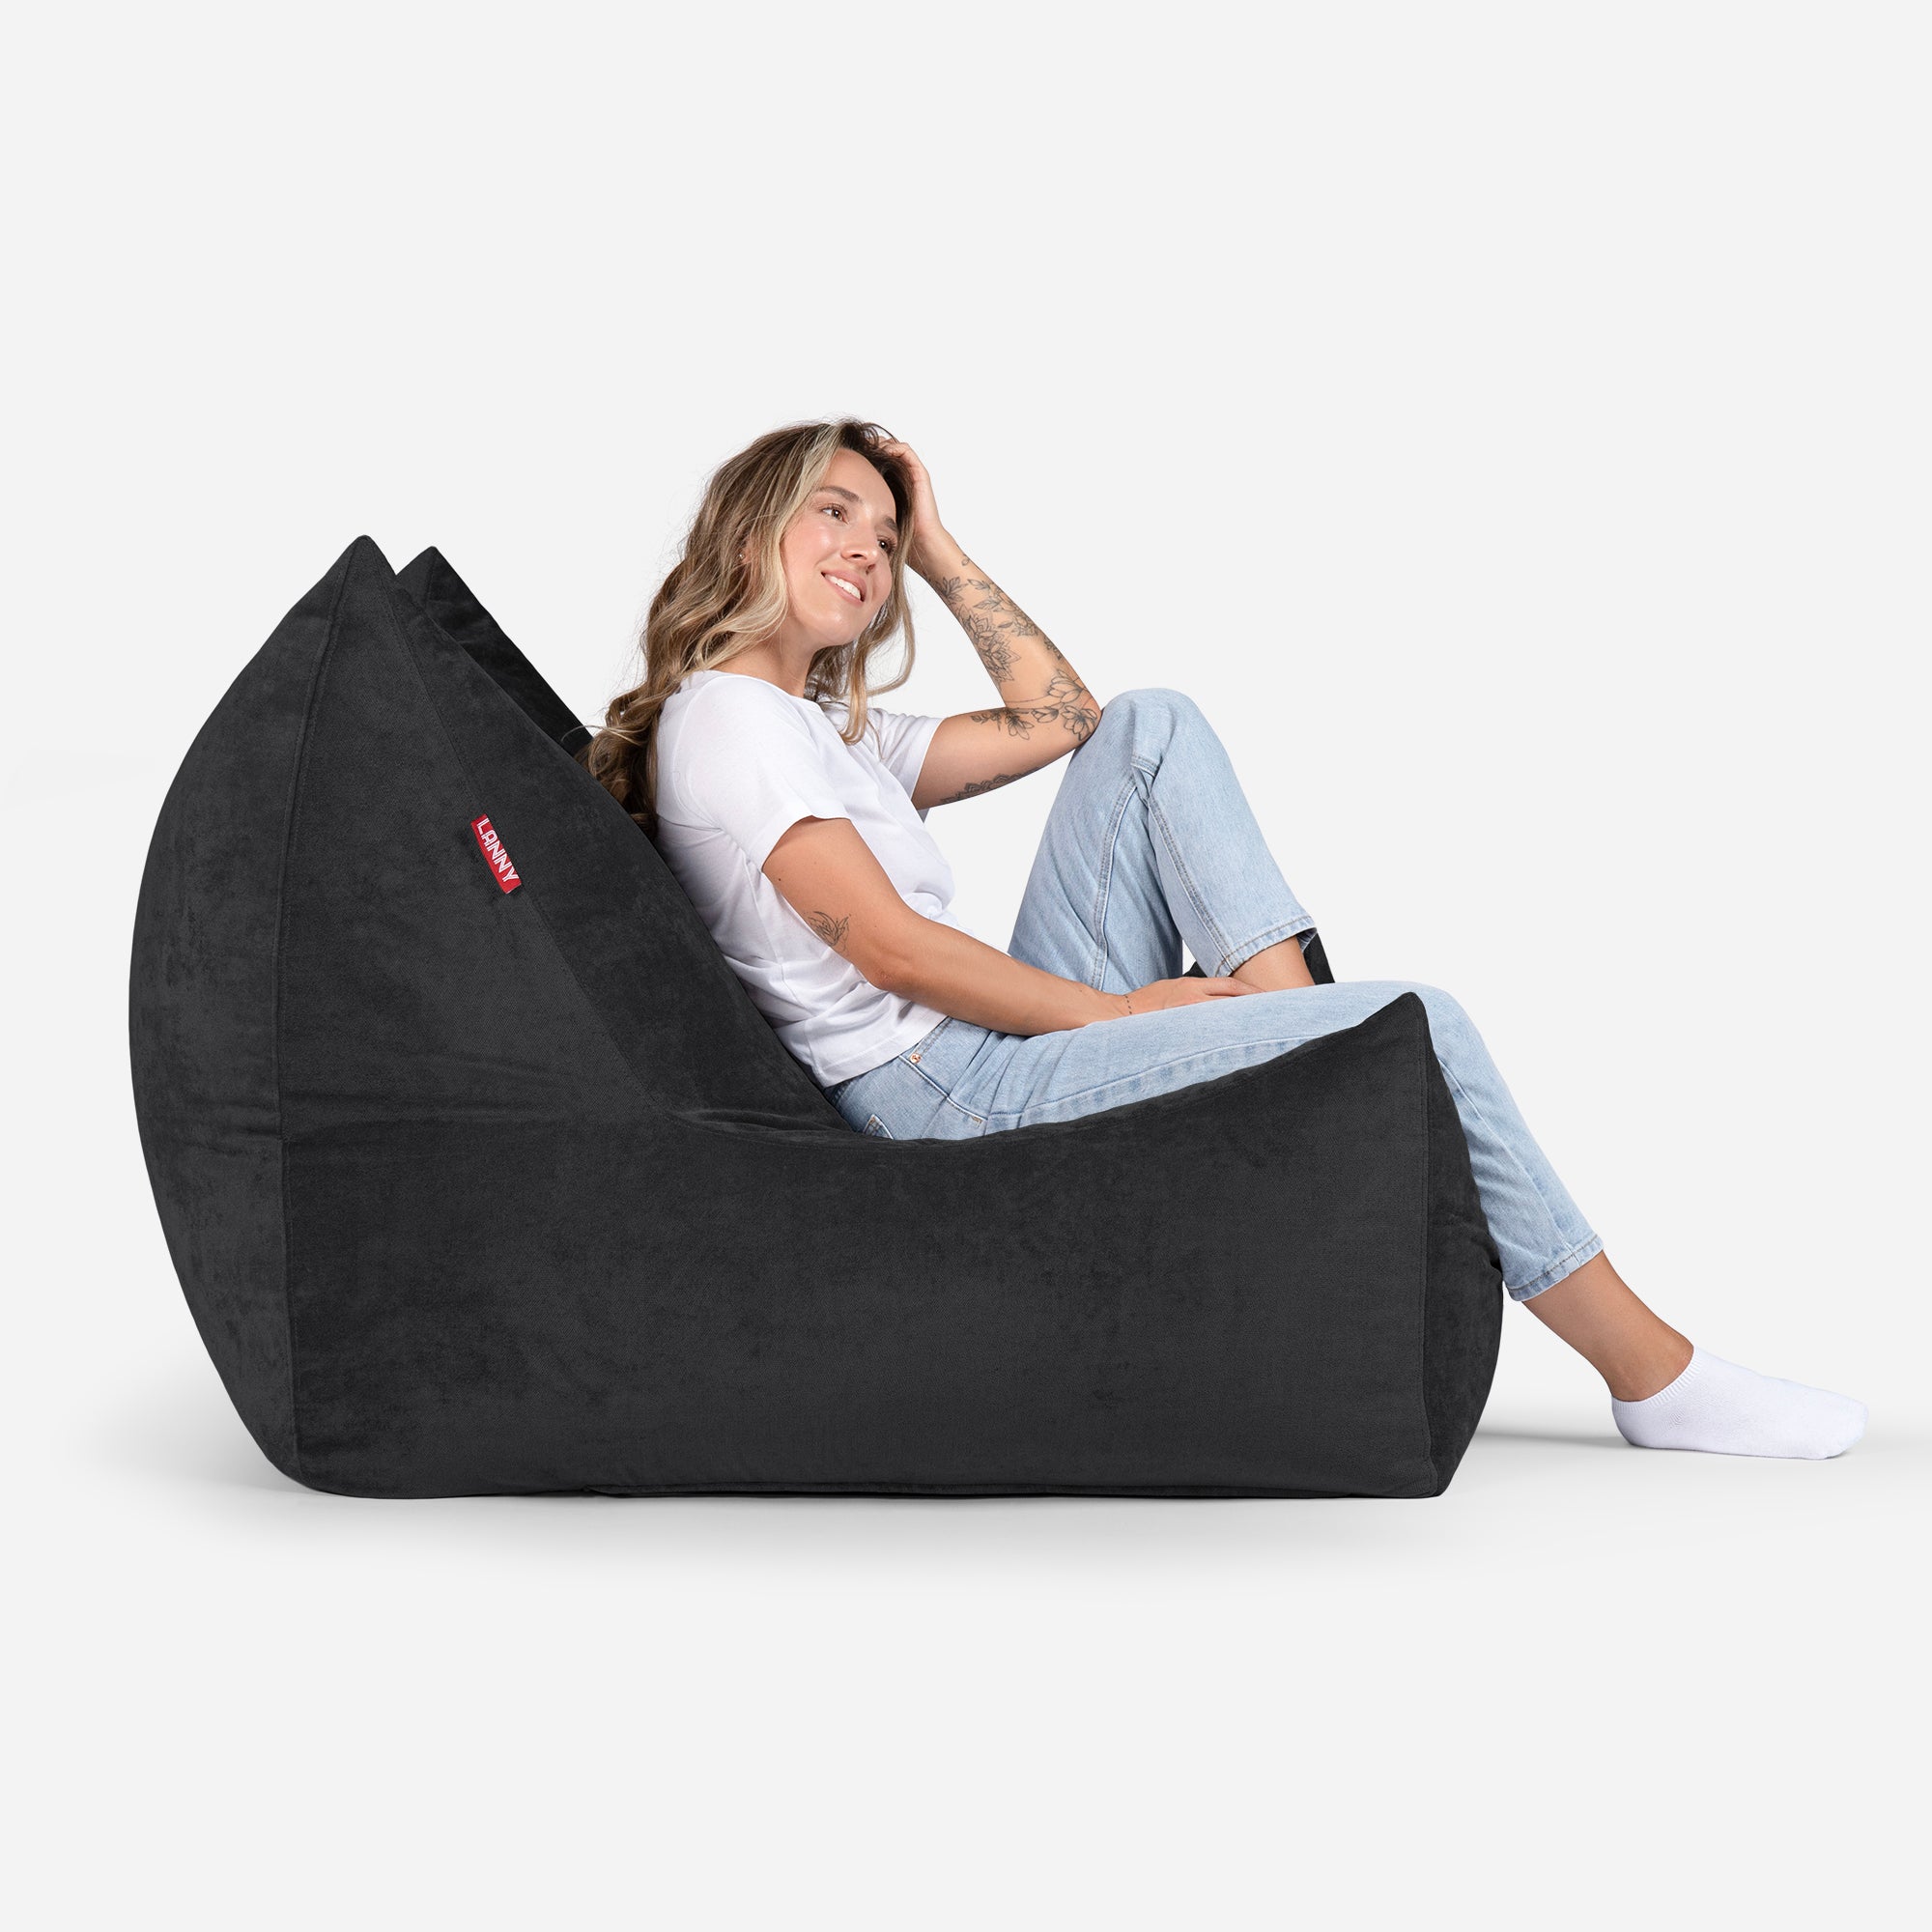 Quadro Aldo Black Bean bag Chair